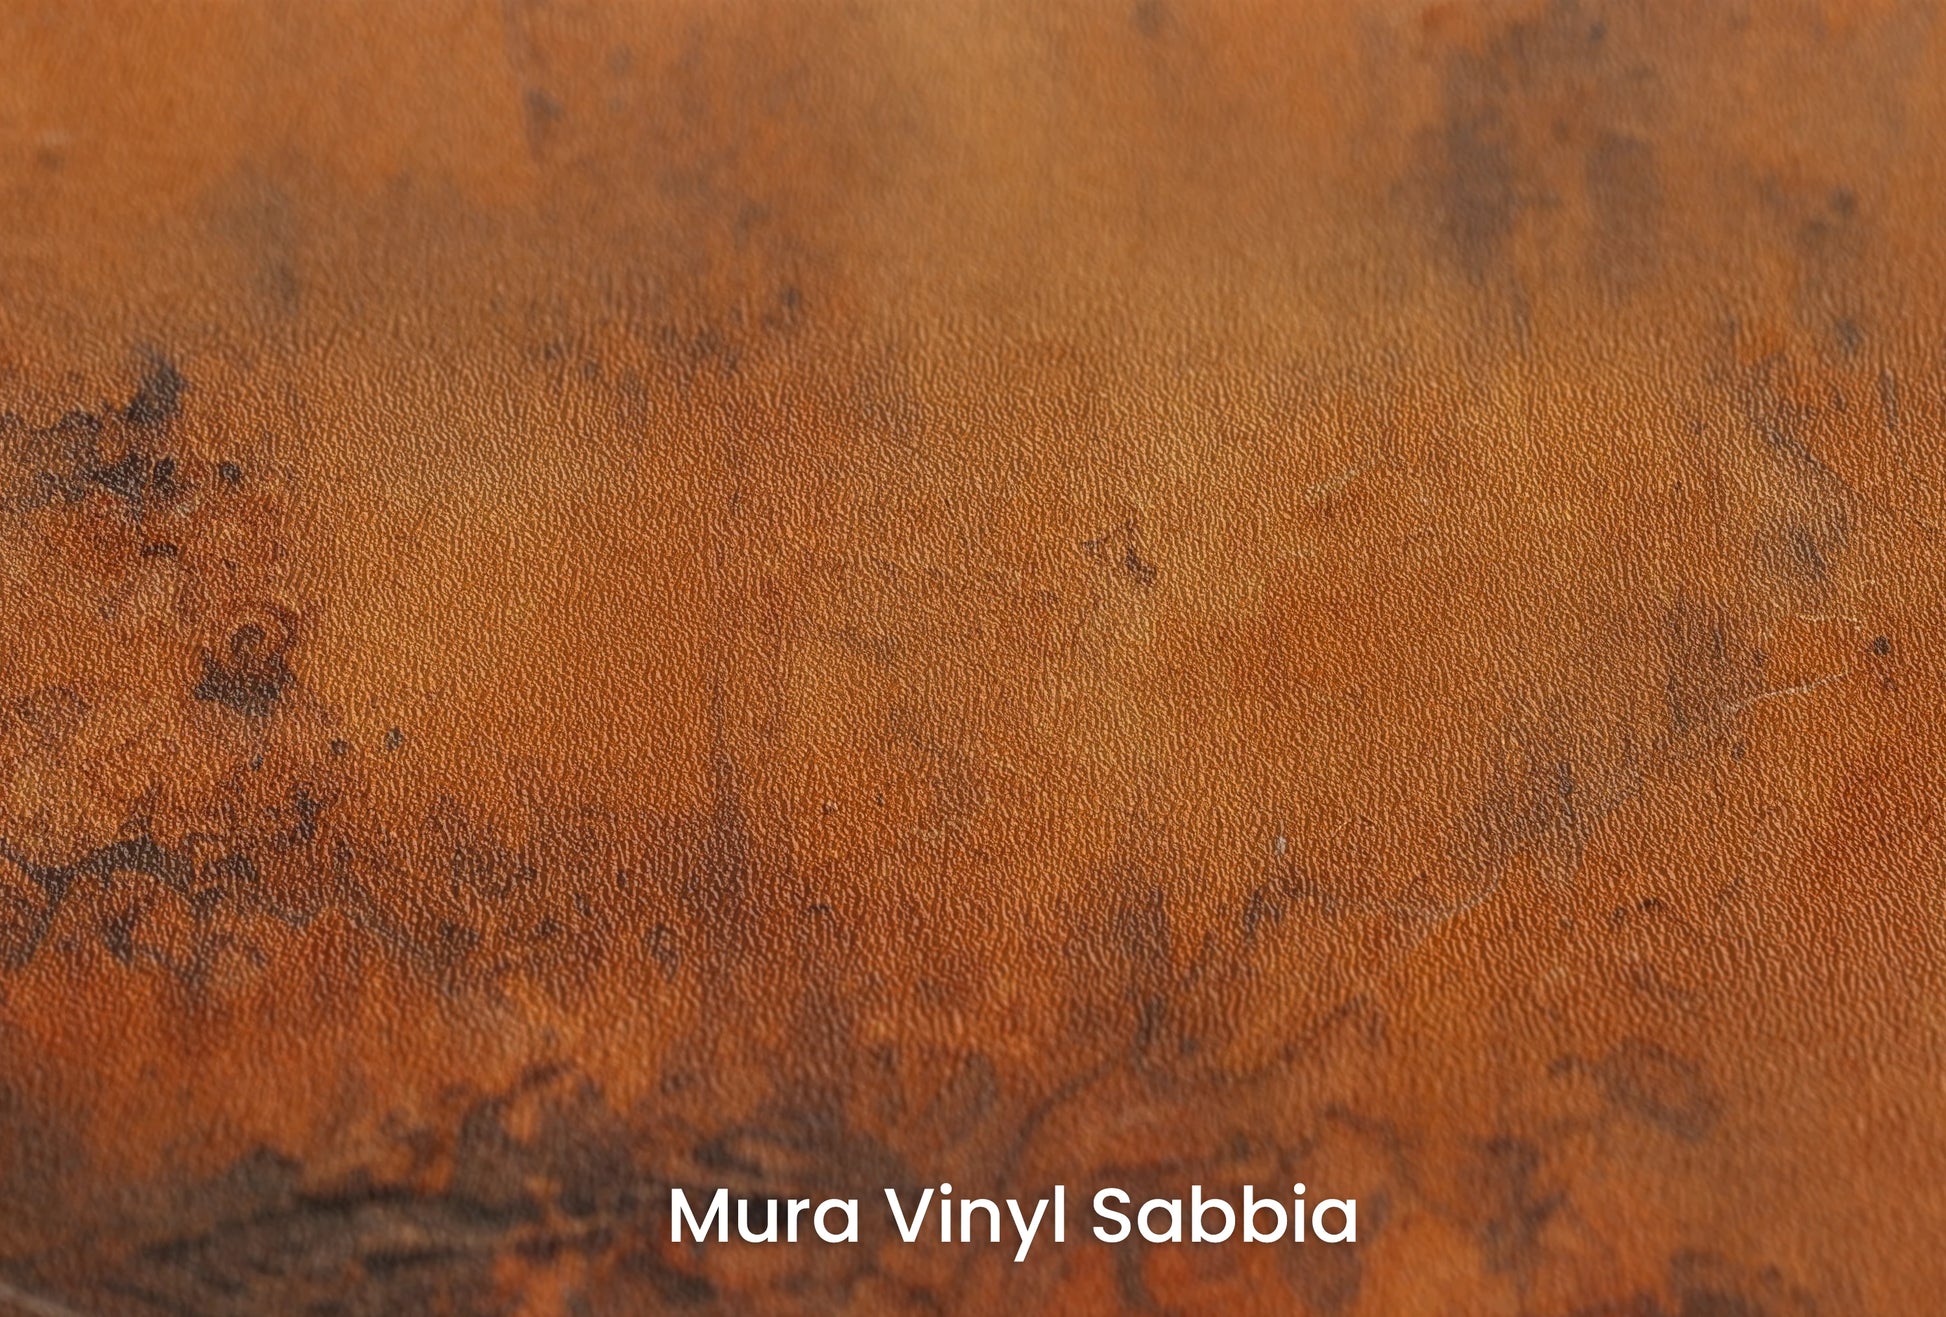 Zbliżenie na artystyczną fototapetę o nazwie Rustic Copper na podłożu Mura Vinyl Sabbia struktura grubego ziarna piasku.